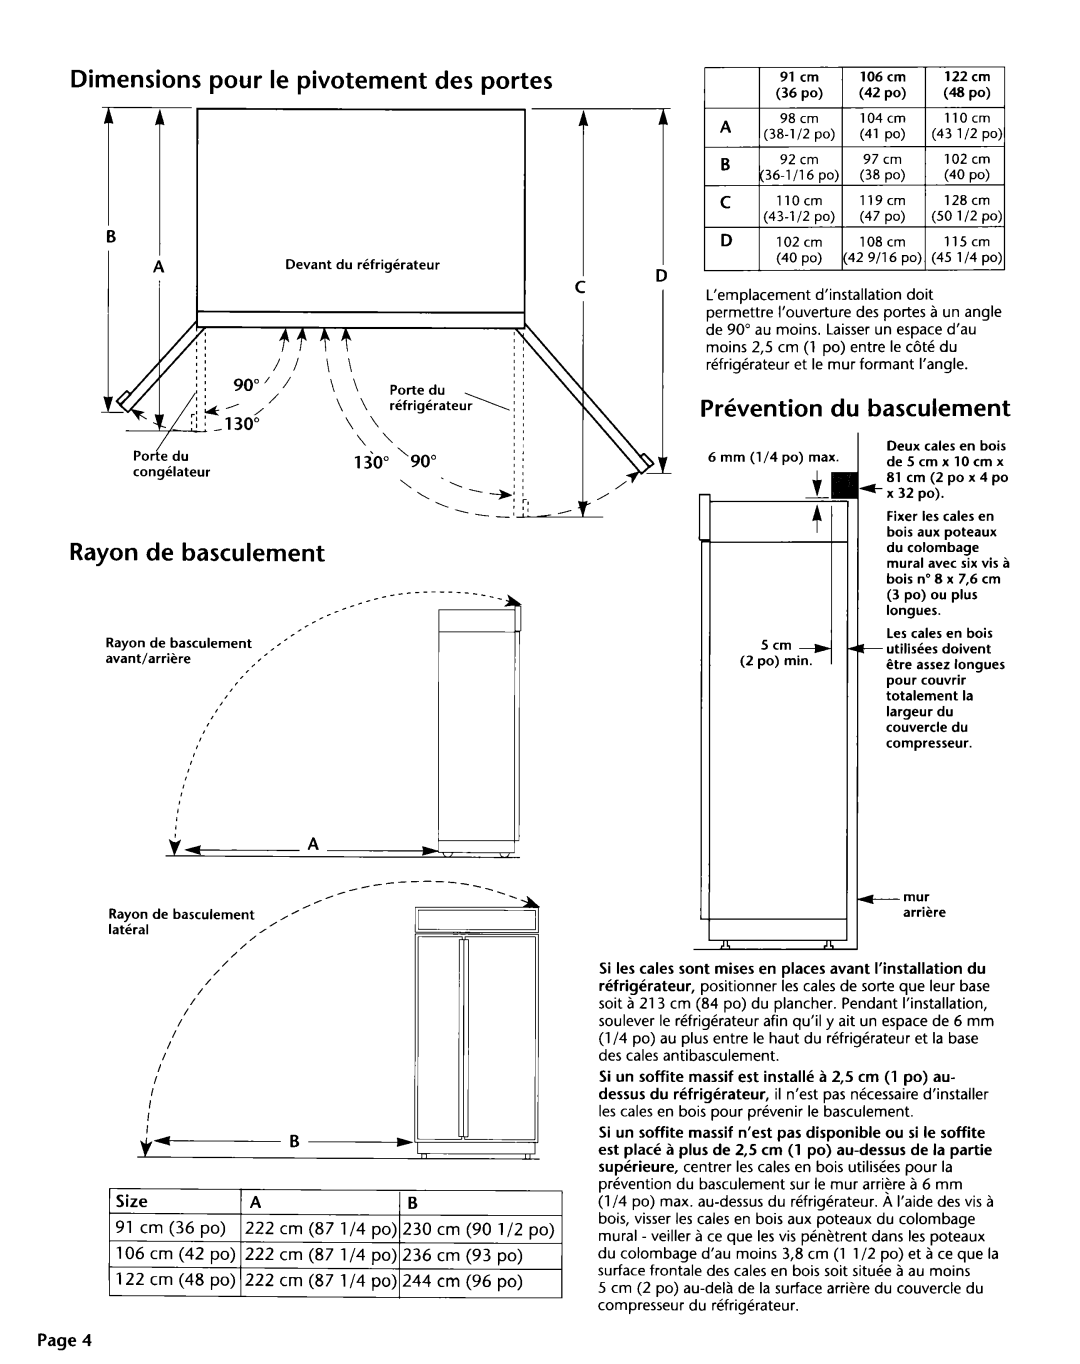 KitchenAid 2004022 Dimensions pour le pivotement des portes, Prkvention du basculement, Rayon de basculement 